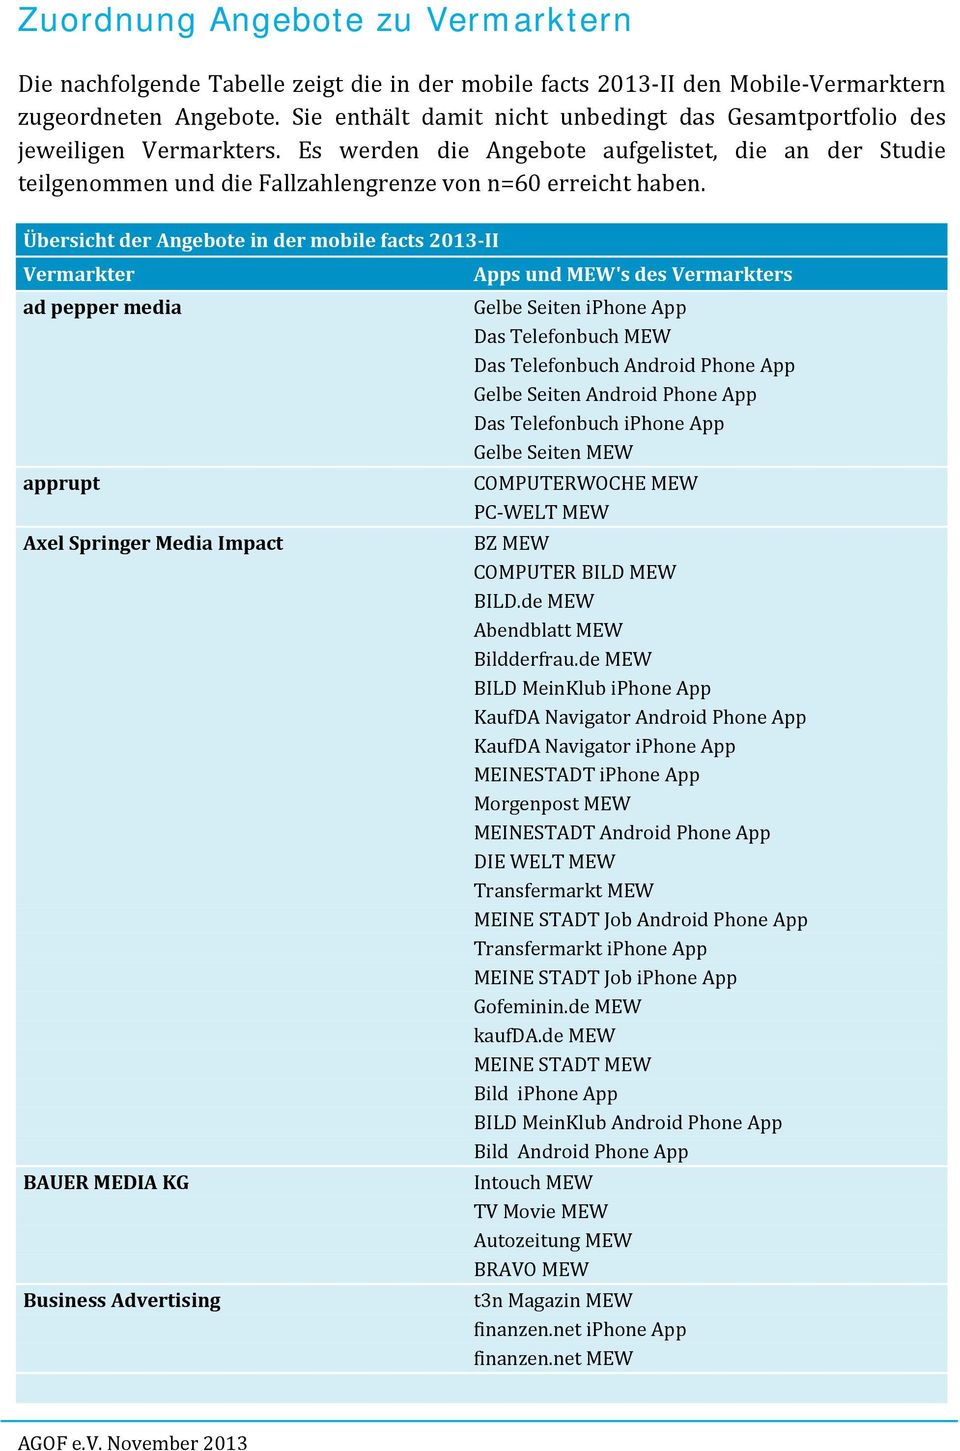 Übersicht der Angebote in der mobile facts 2013 II Vermarkter ad pepper media apprupt Axel Springer Media Impact BAUER MEDIA KG Business Advertising Apps und MEW's des Vermarkters Gelbe Seiten iphone